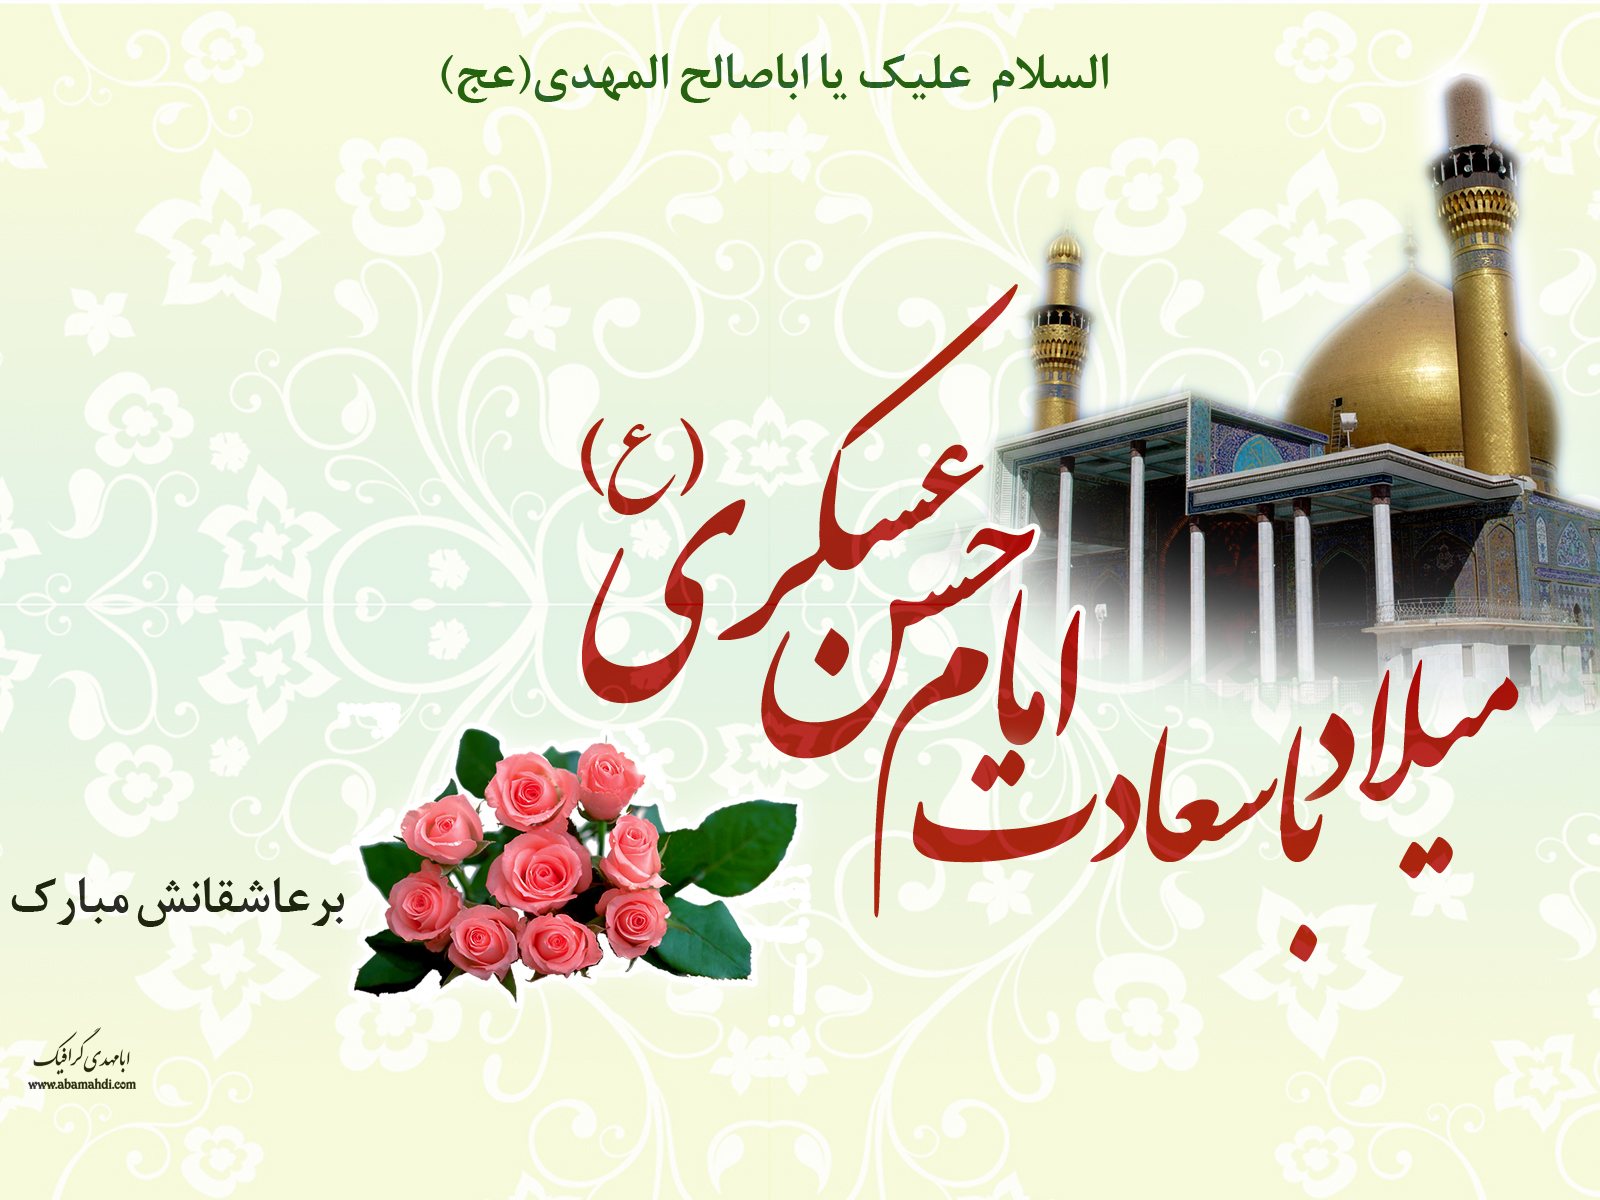 جشن میلاد امام حسن عسکری(ع) در مسجد جامع زاغمرز برگزار شد